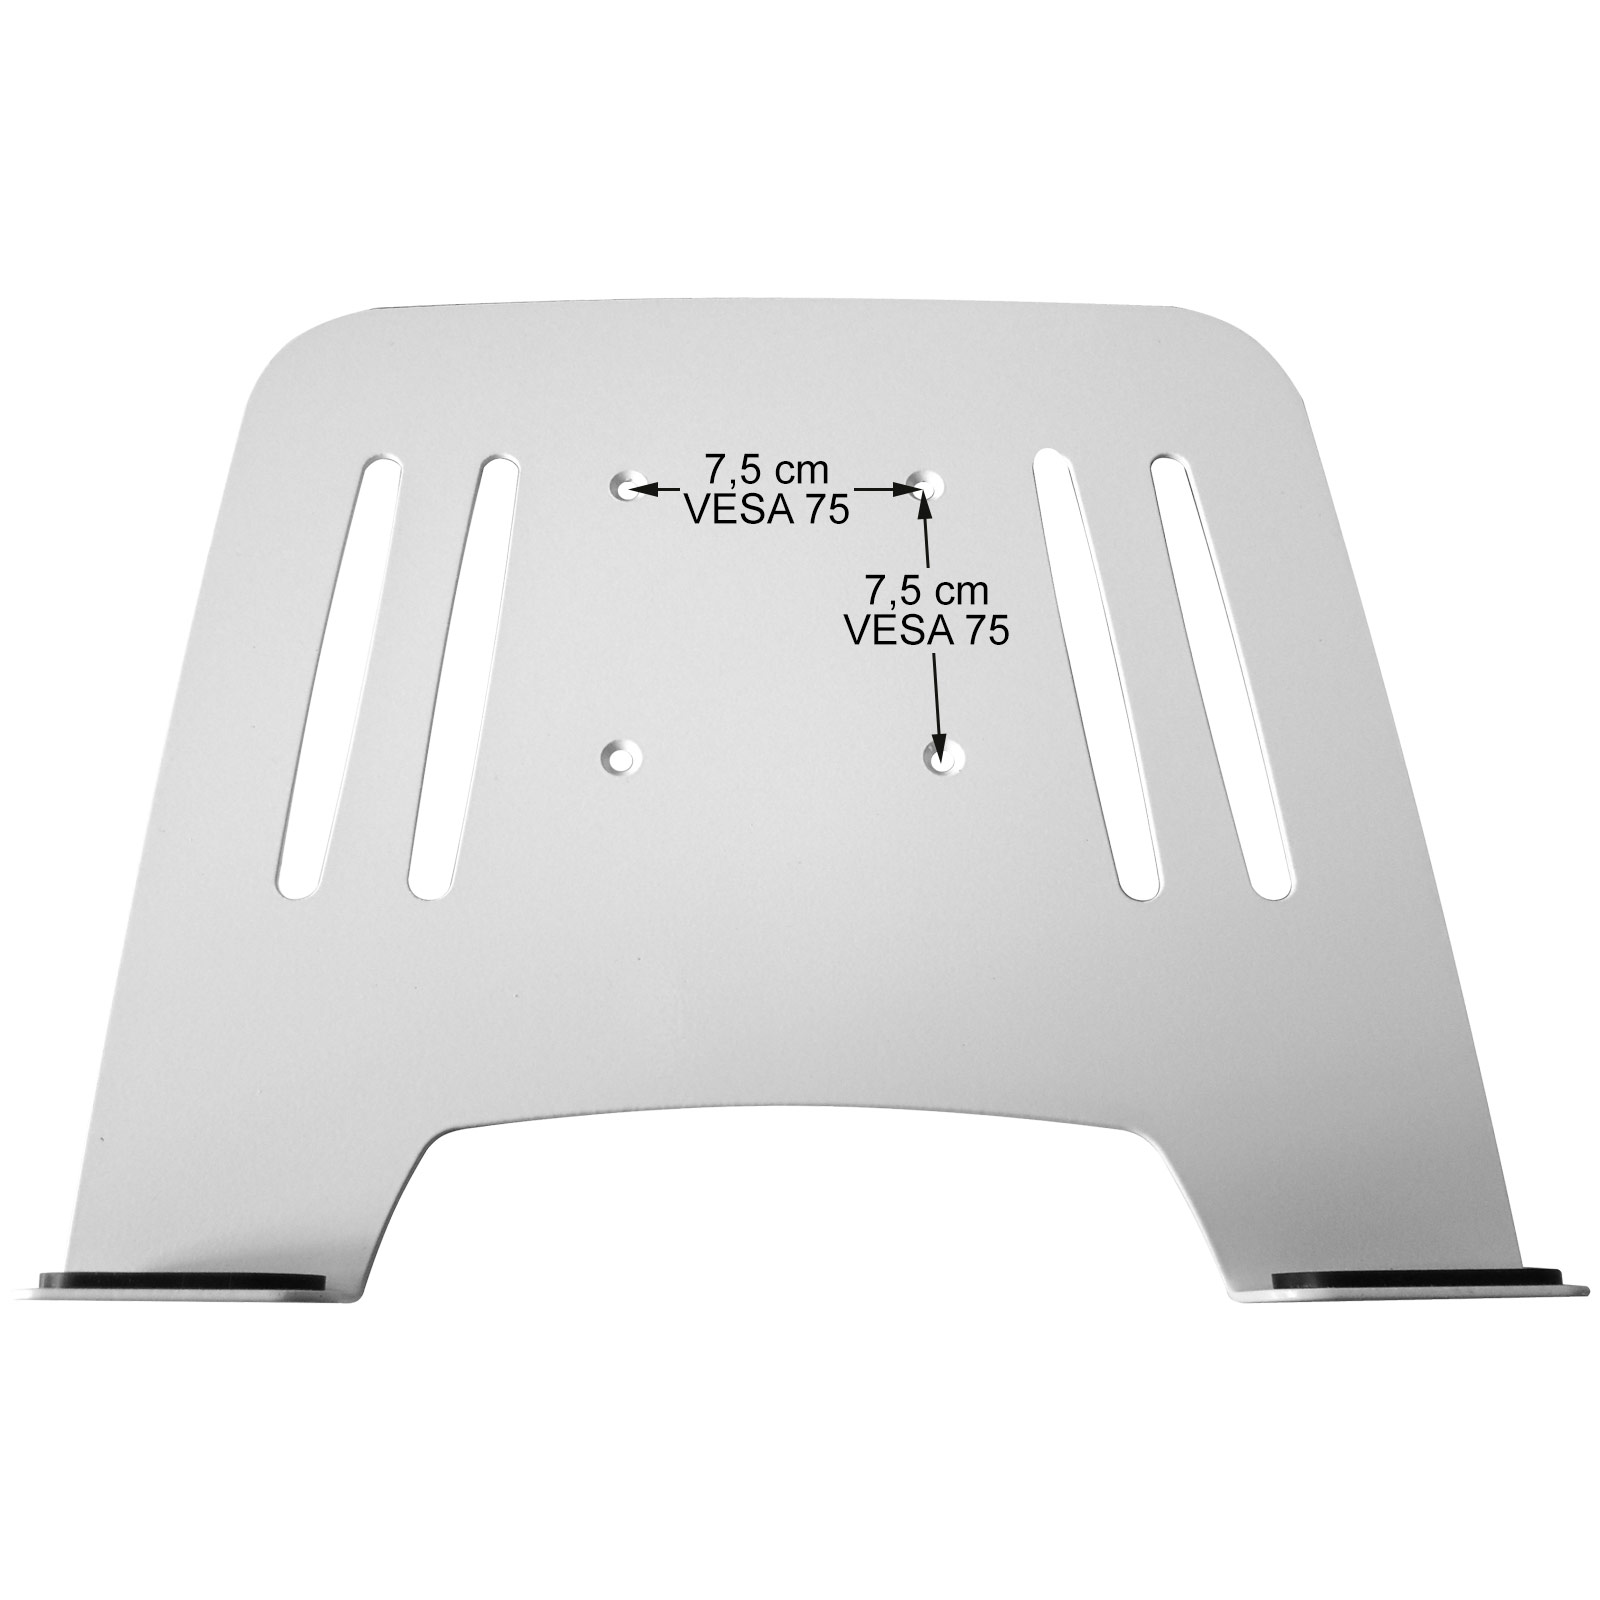 Halterung INSTRUMENTS weiß Adapterplatte Wandhalterung Ablage Modell: L52B-IP3W Laptop Wandhalterung DRALL mit schwarz Notebook